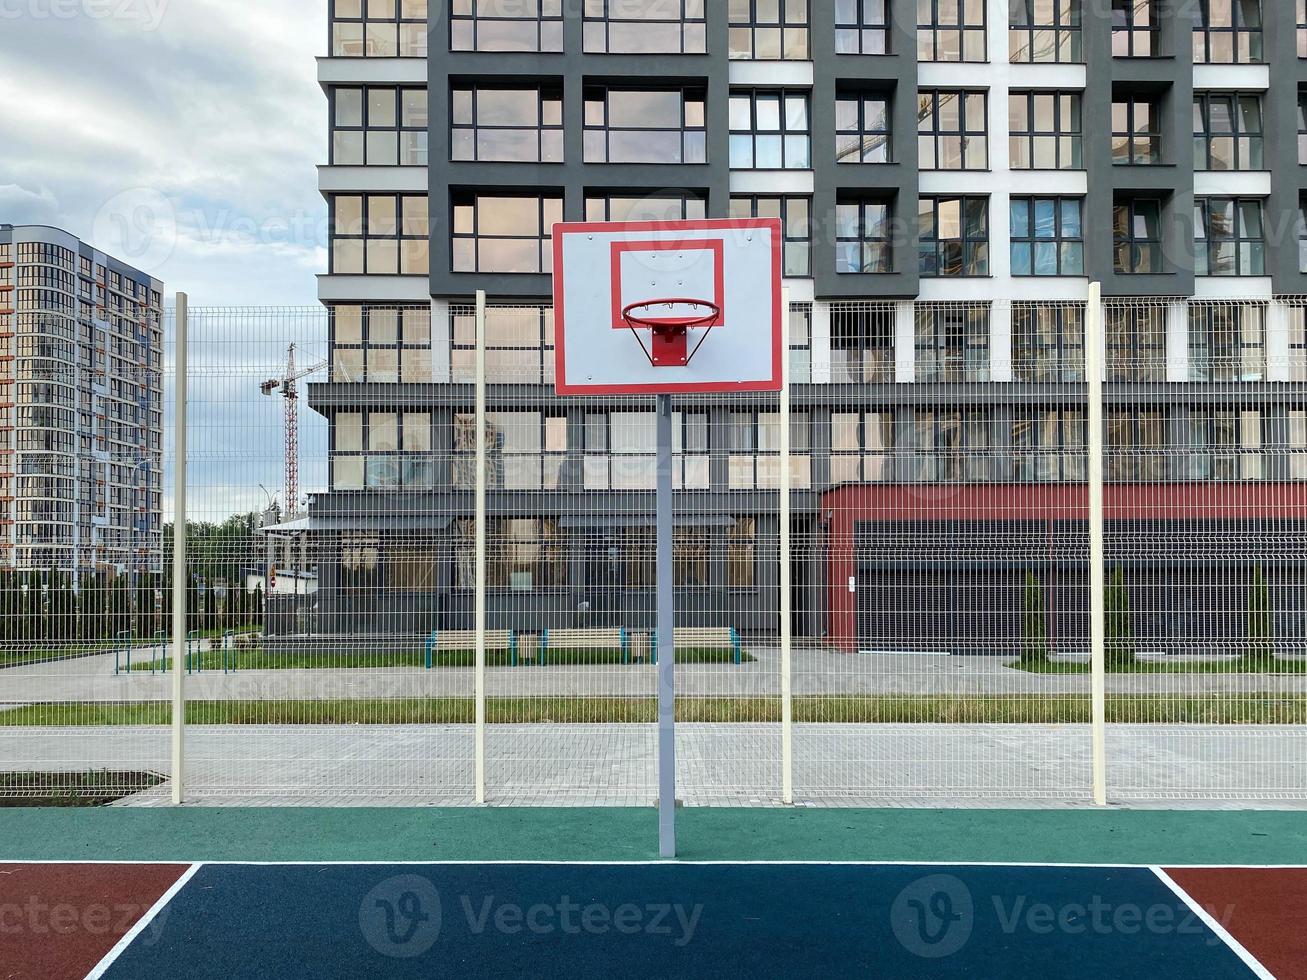 pallacanestro cestino e tavola su il gli sport terra nel il città cortile vicino il nuovo edificio foto